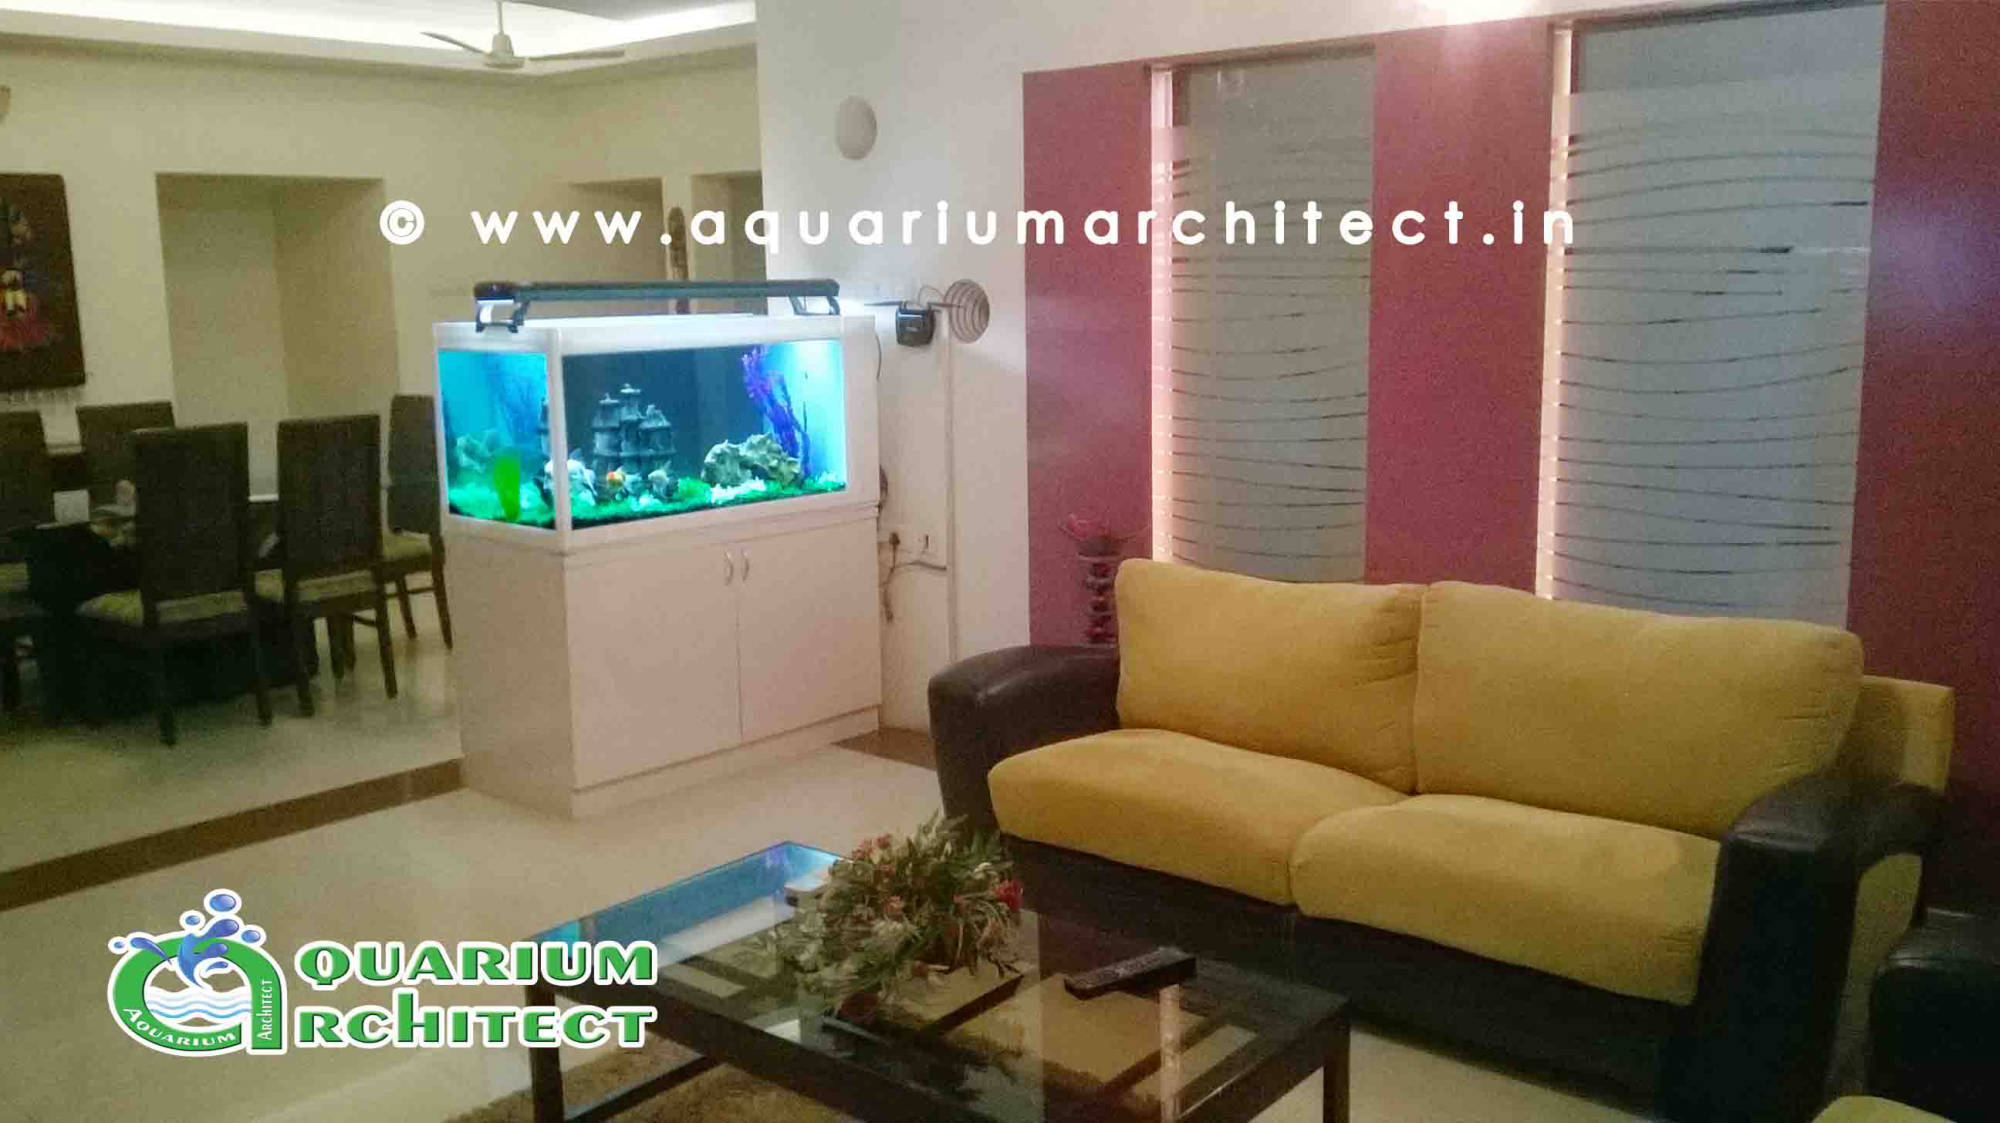 See Through Aquarium at L&T Guest House | Aquarium Chennai | Aquarium architect.in | aquairum display